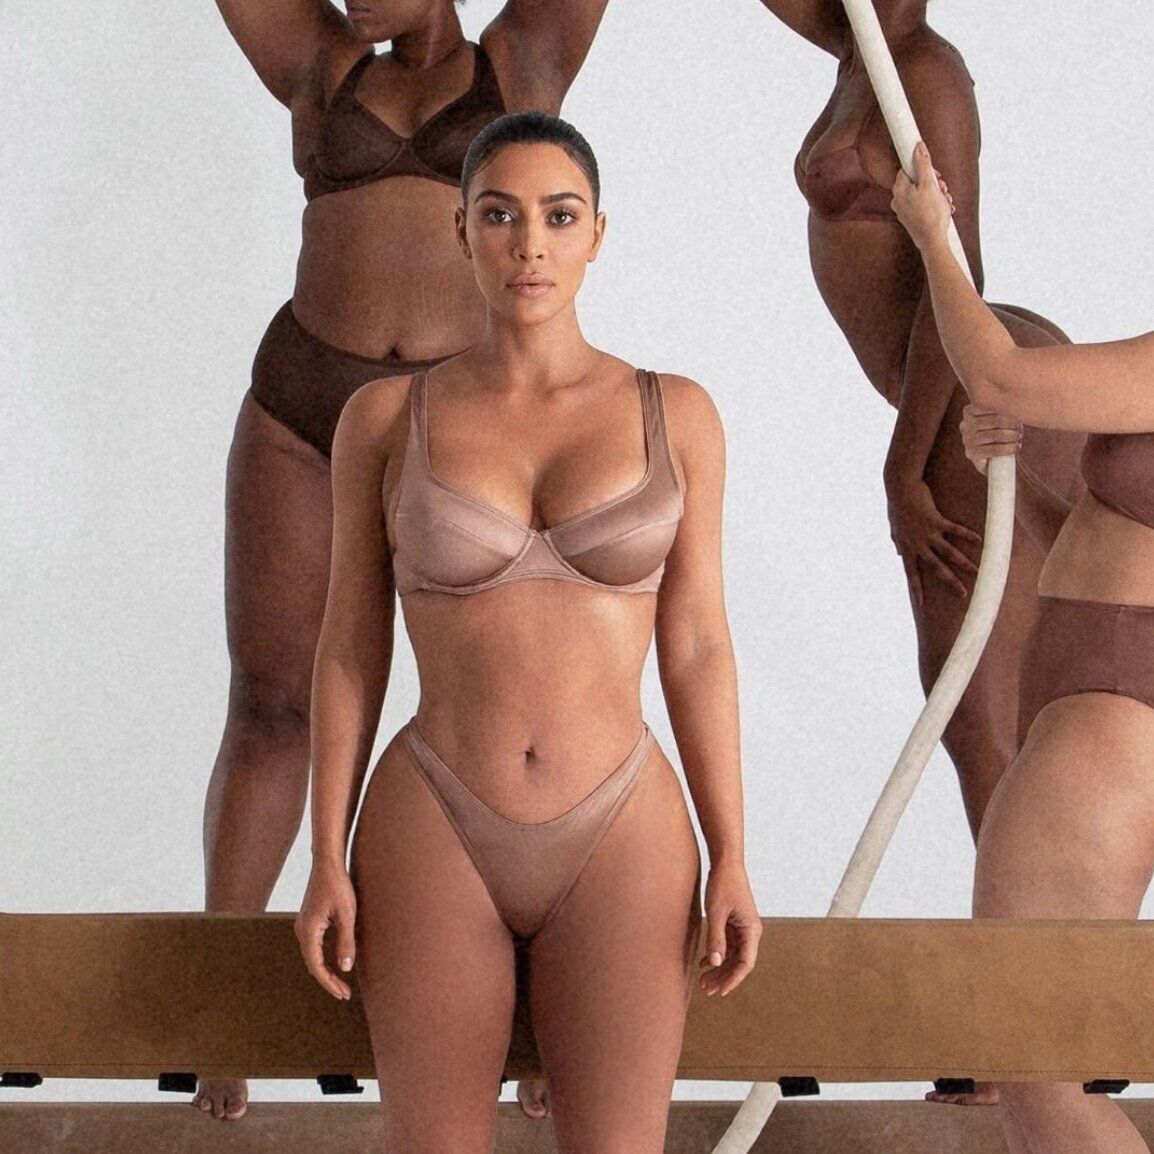 Kim Kardashian Launches SKIMS Cotton Collection